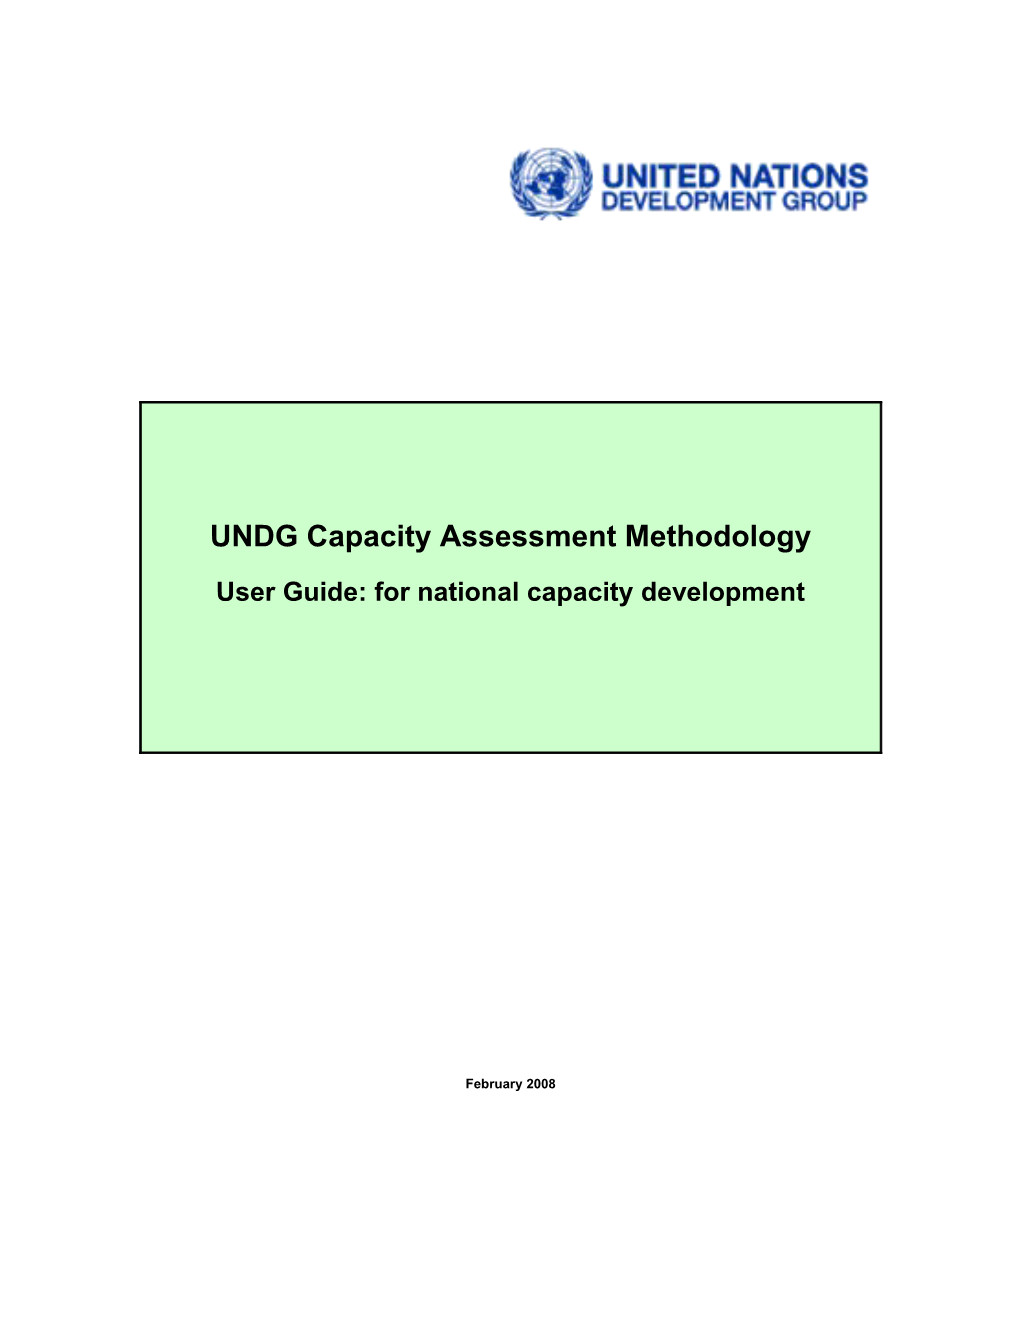 Capacity Assessment Methodology